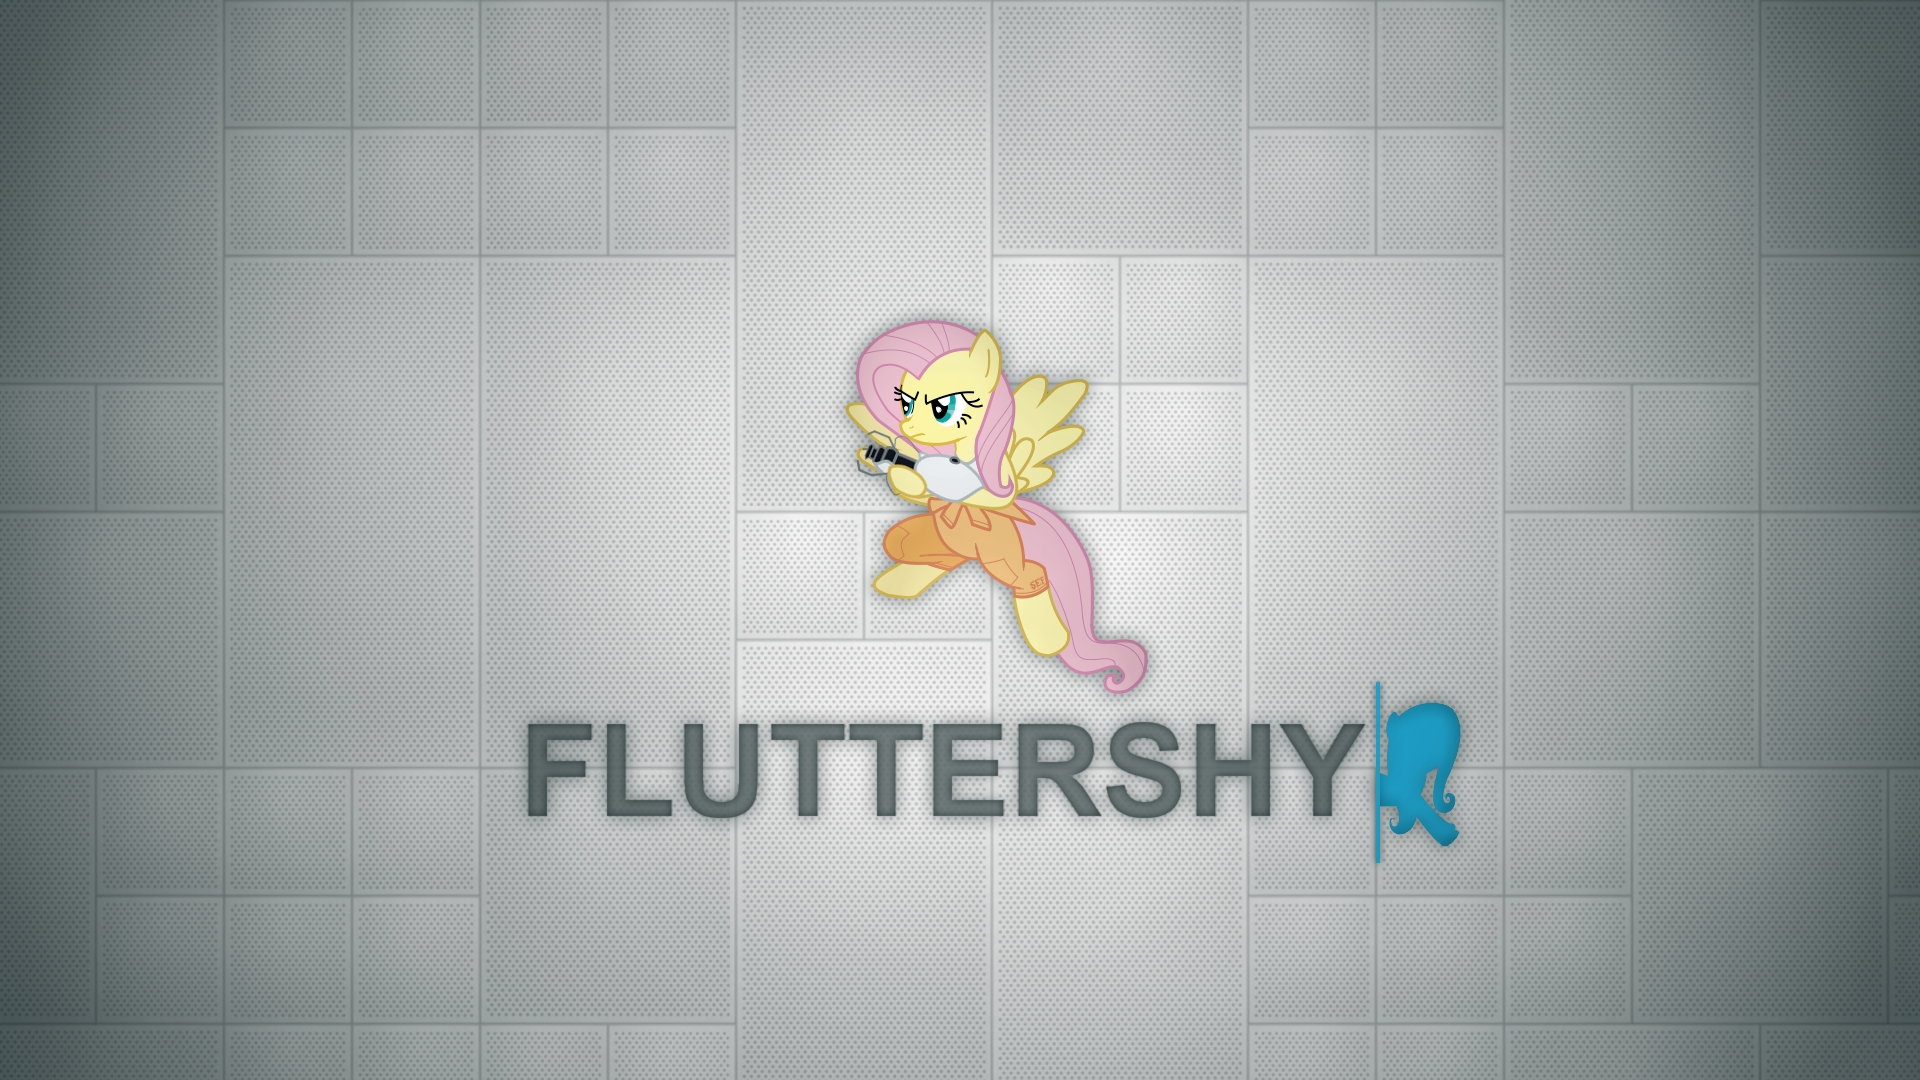 Fluttershy - Portal Style - Wallpaper by Prollgurke and Sefling